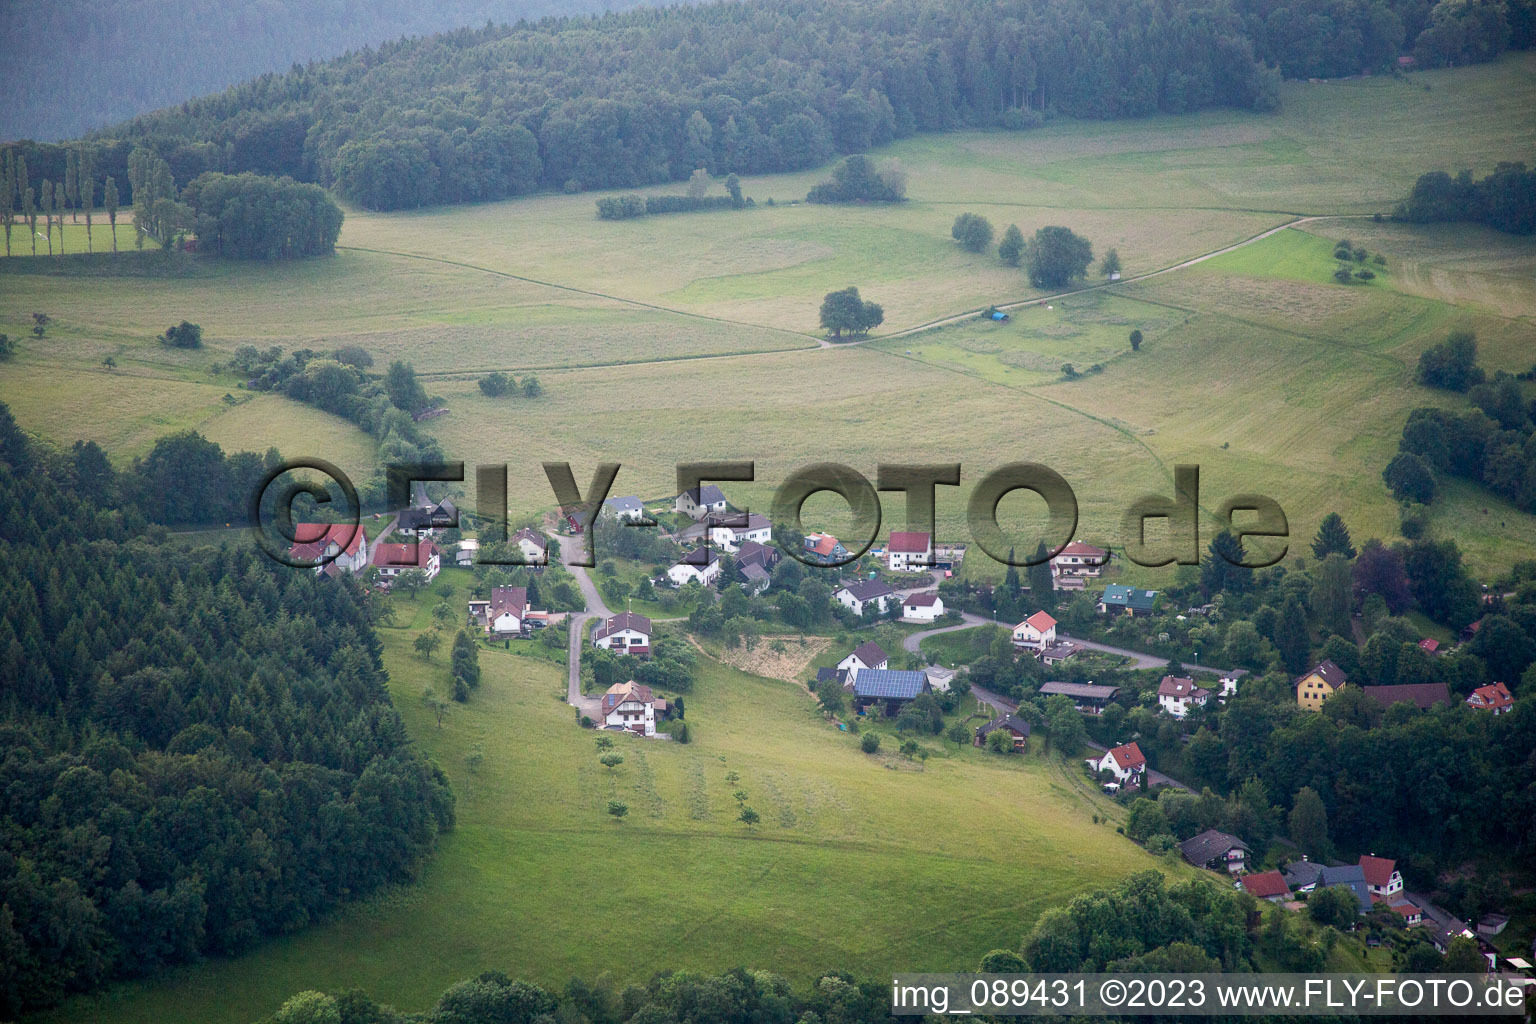 Brombach im Bundesland Baden-Württemberg, Deutschland aus der Luft betrachtet